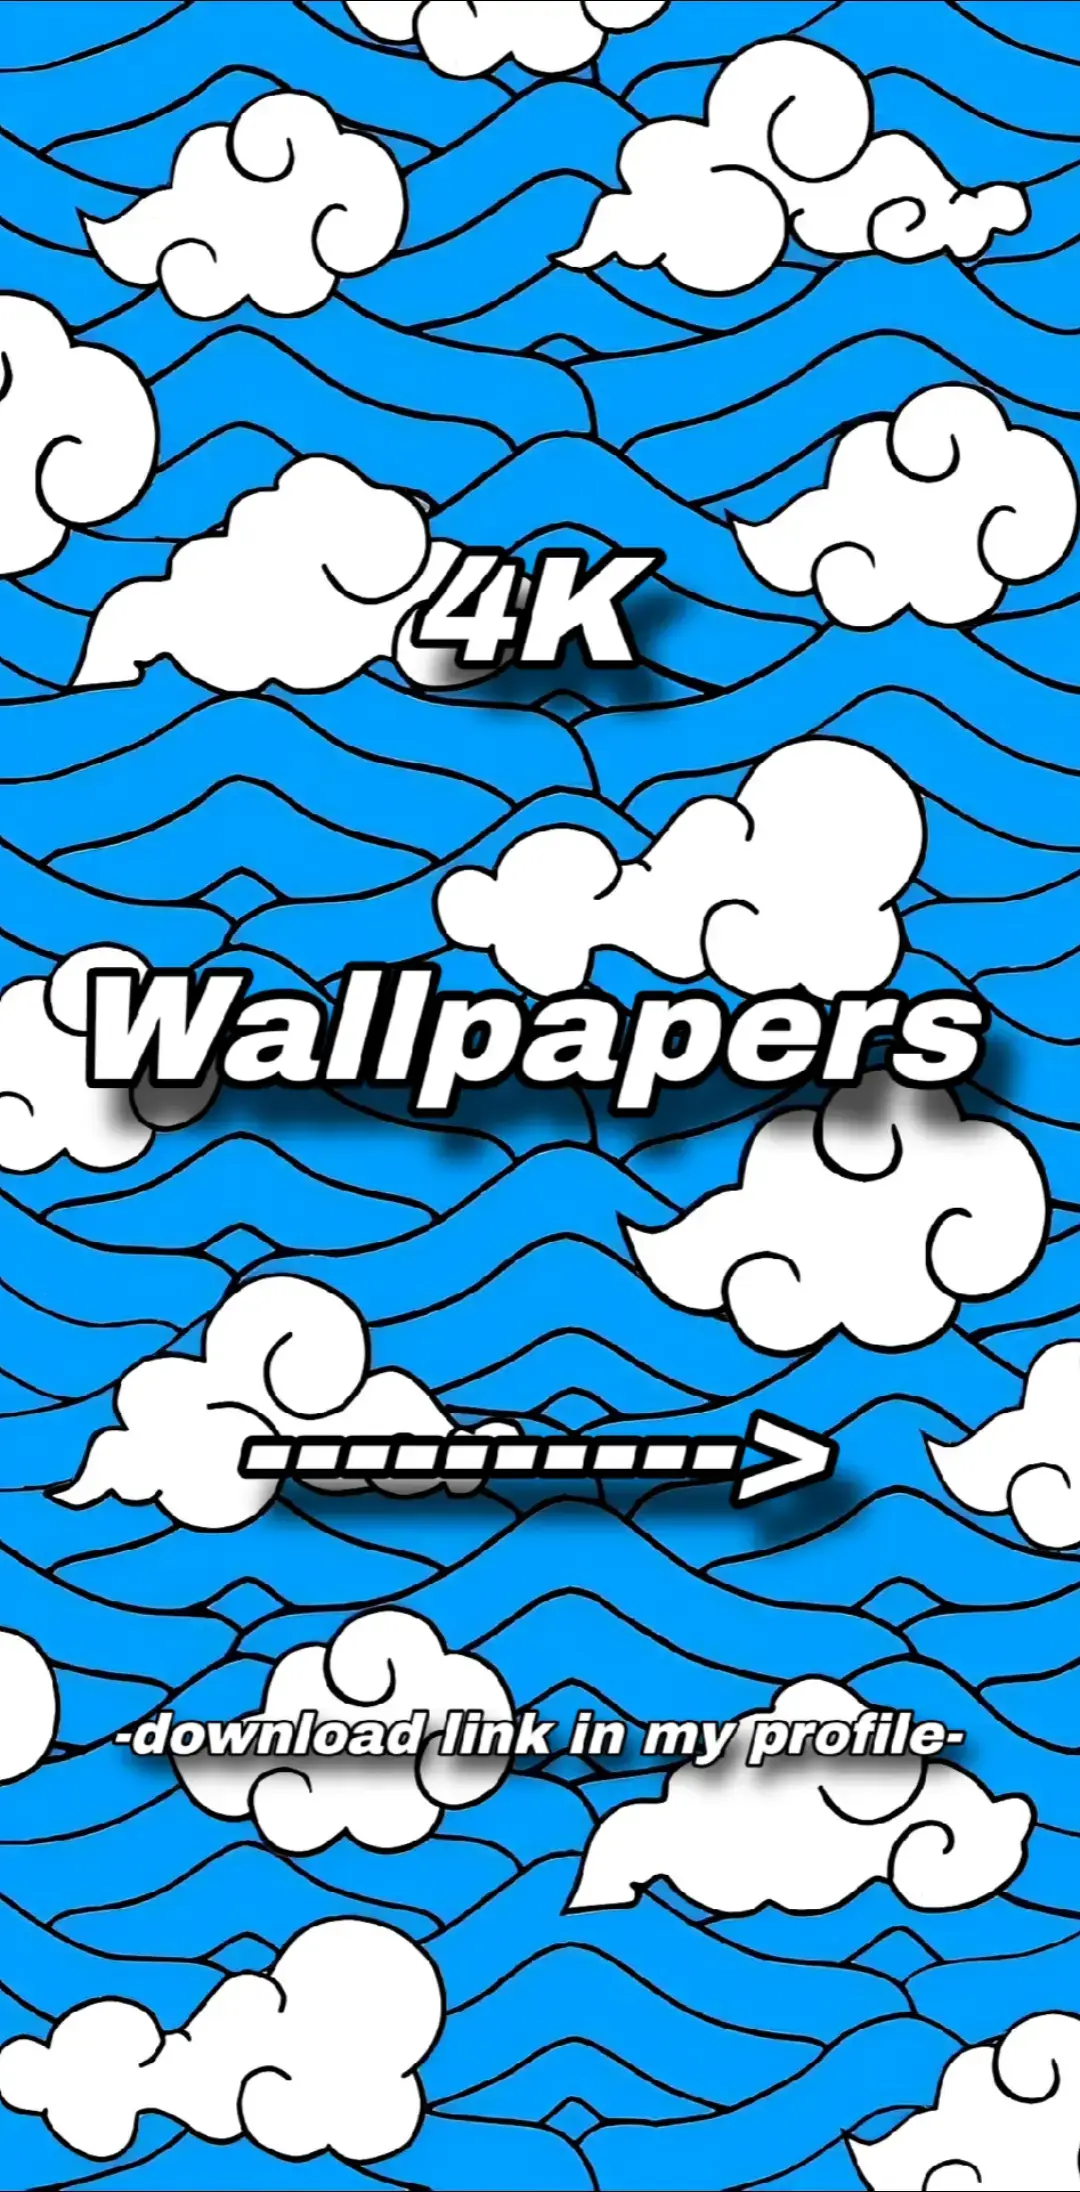 4K Wallpapers #wallpaper #wallpapers #4kwallpaper #lockscreen #lockscreenwallpaper #fondo #fondodepantalla #alex_db27 #alex_db27_wallpapers 